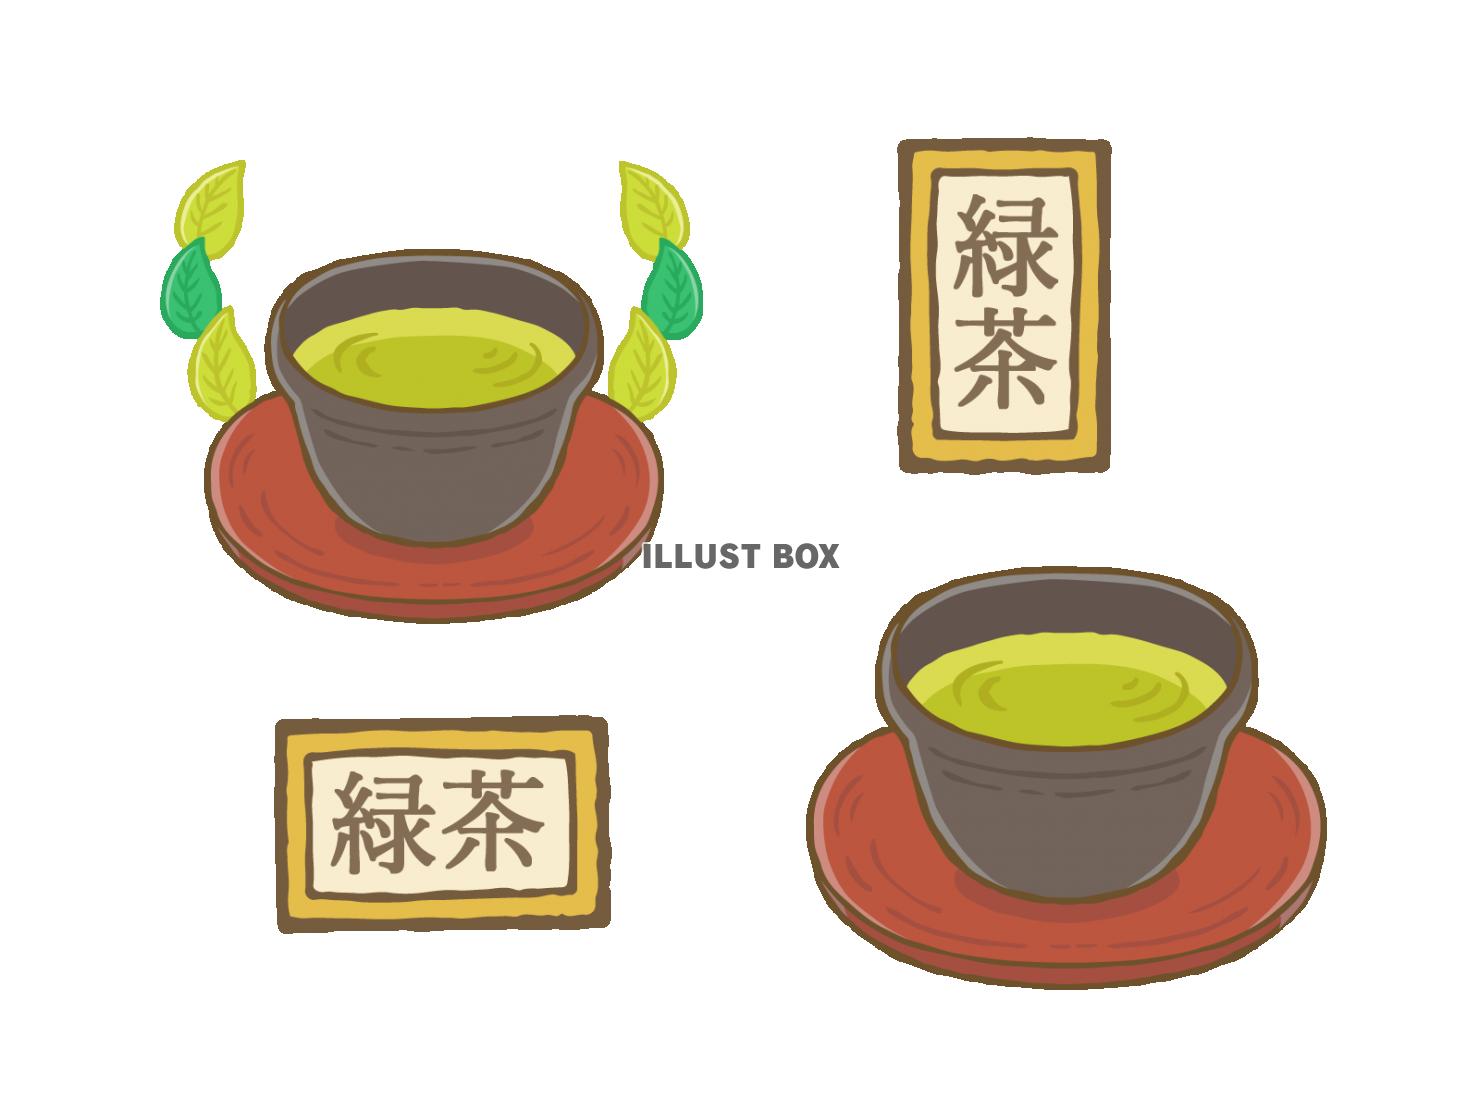 緑茶とラベル装飾いろいろセット